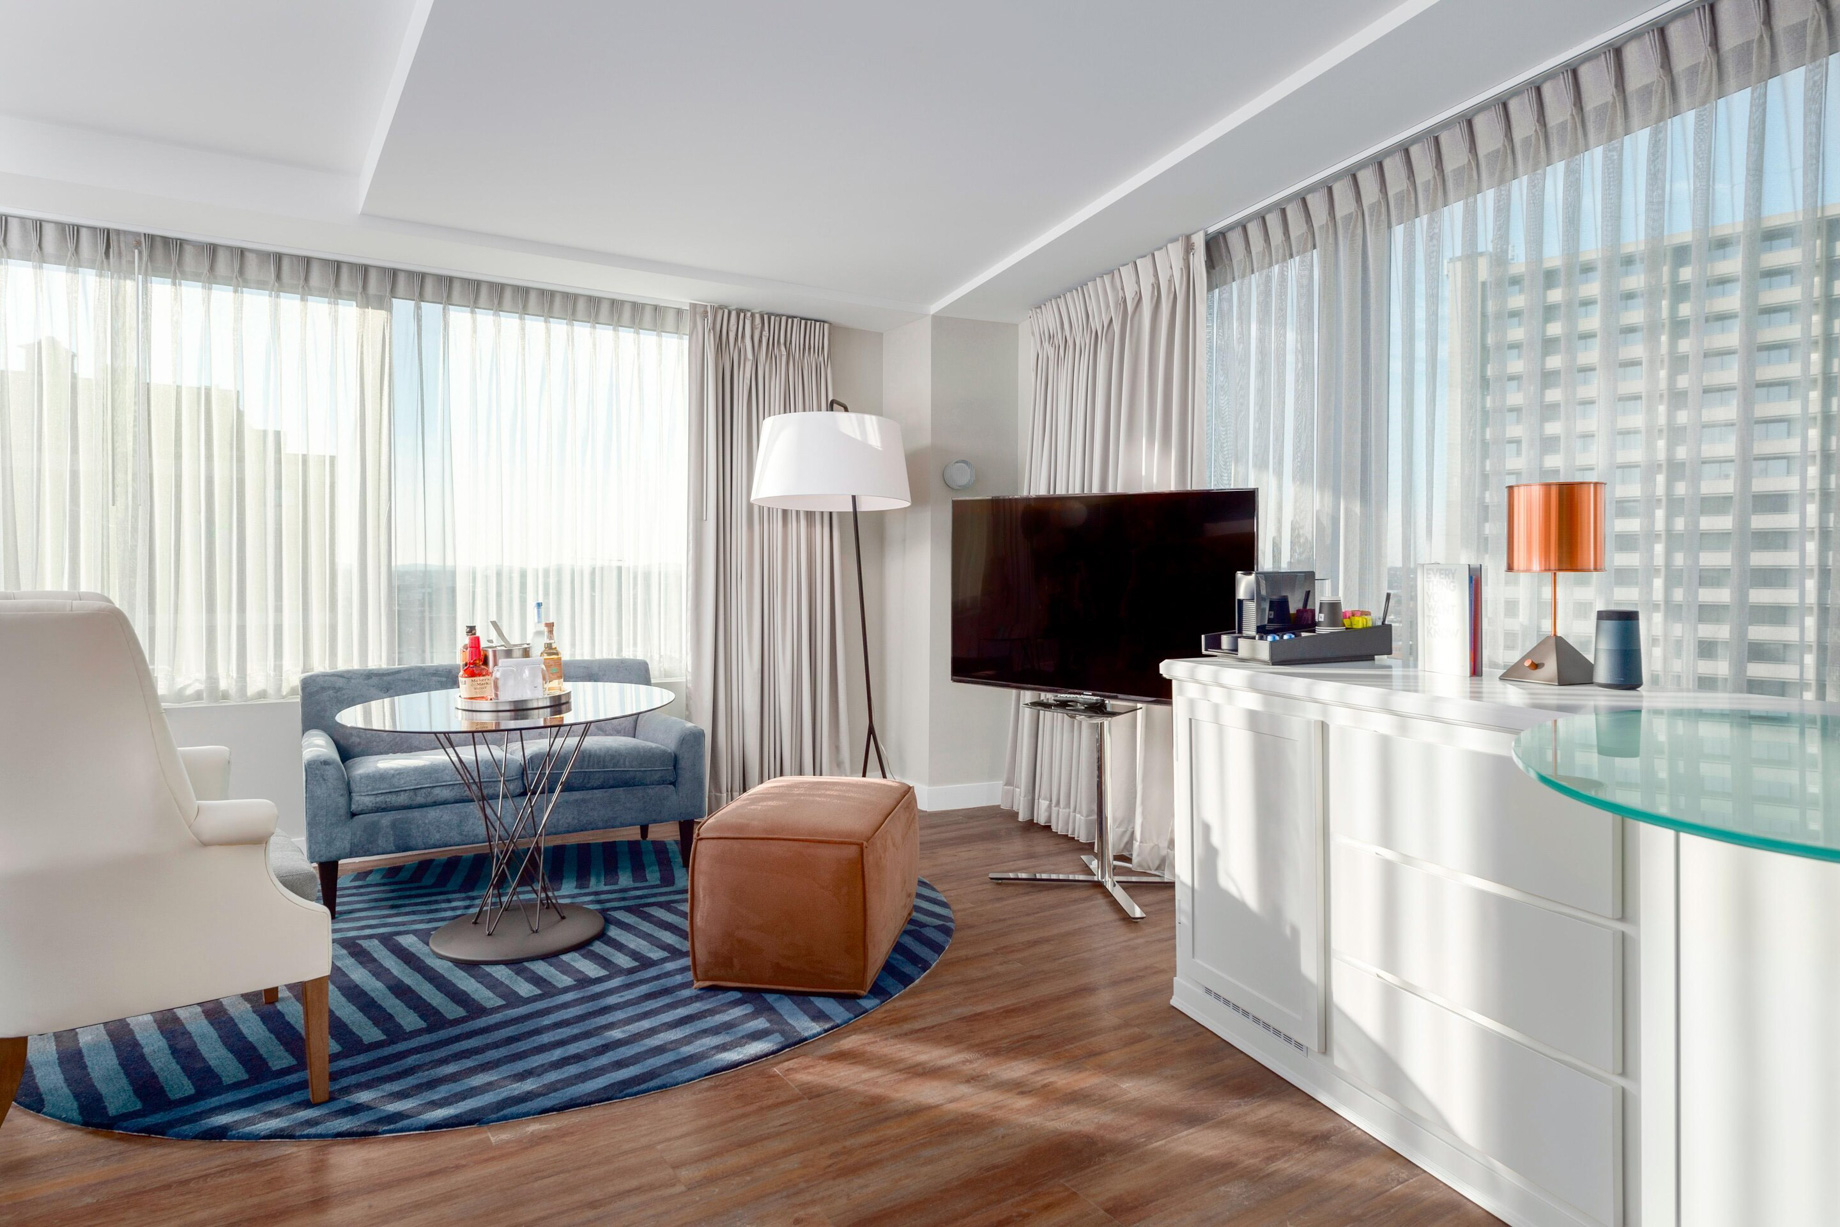 W Boston Hotel – Boston, MA, USA – Mega Guest Room Interior Living Area